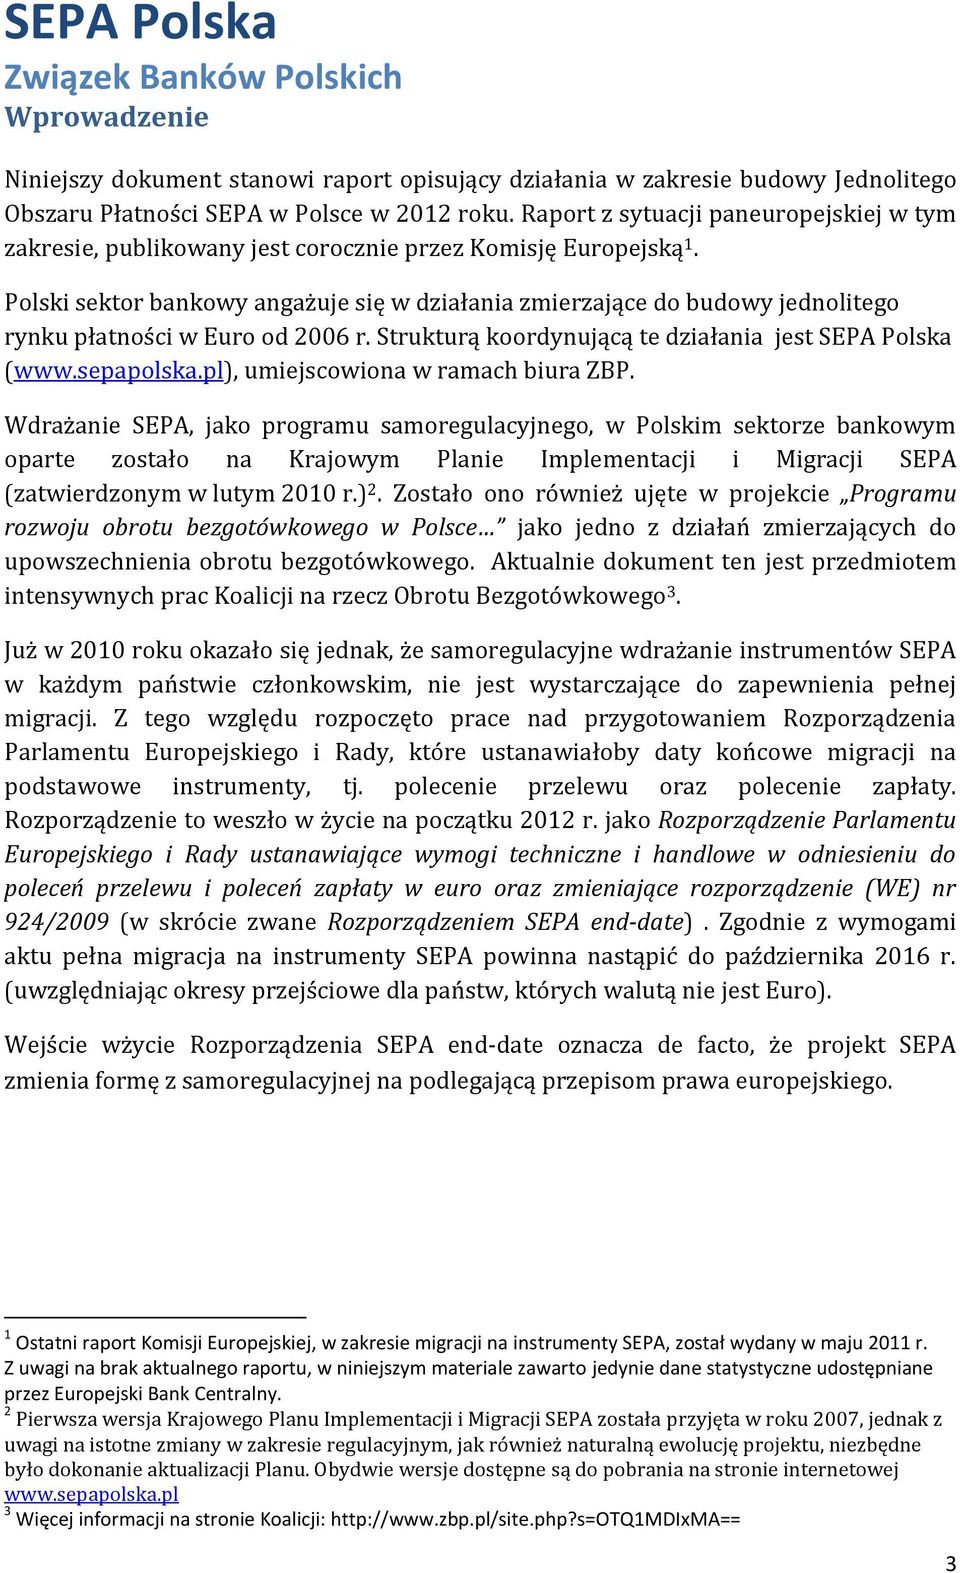 Polski sektor bankowy angażuje się w działania zmierzające do budowy jednolitego rynku płatności w Euro od 2006 r. Strukturą koordynującą te działania jest SEPA Polska (www.sepapolska.